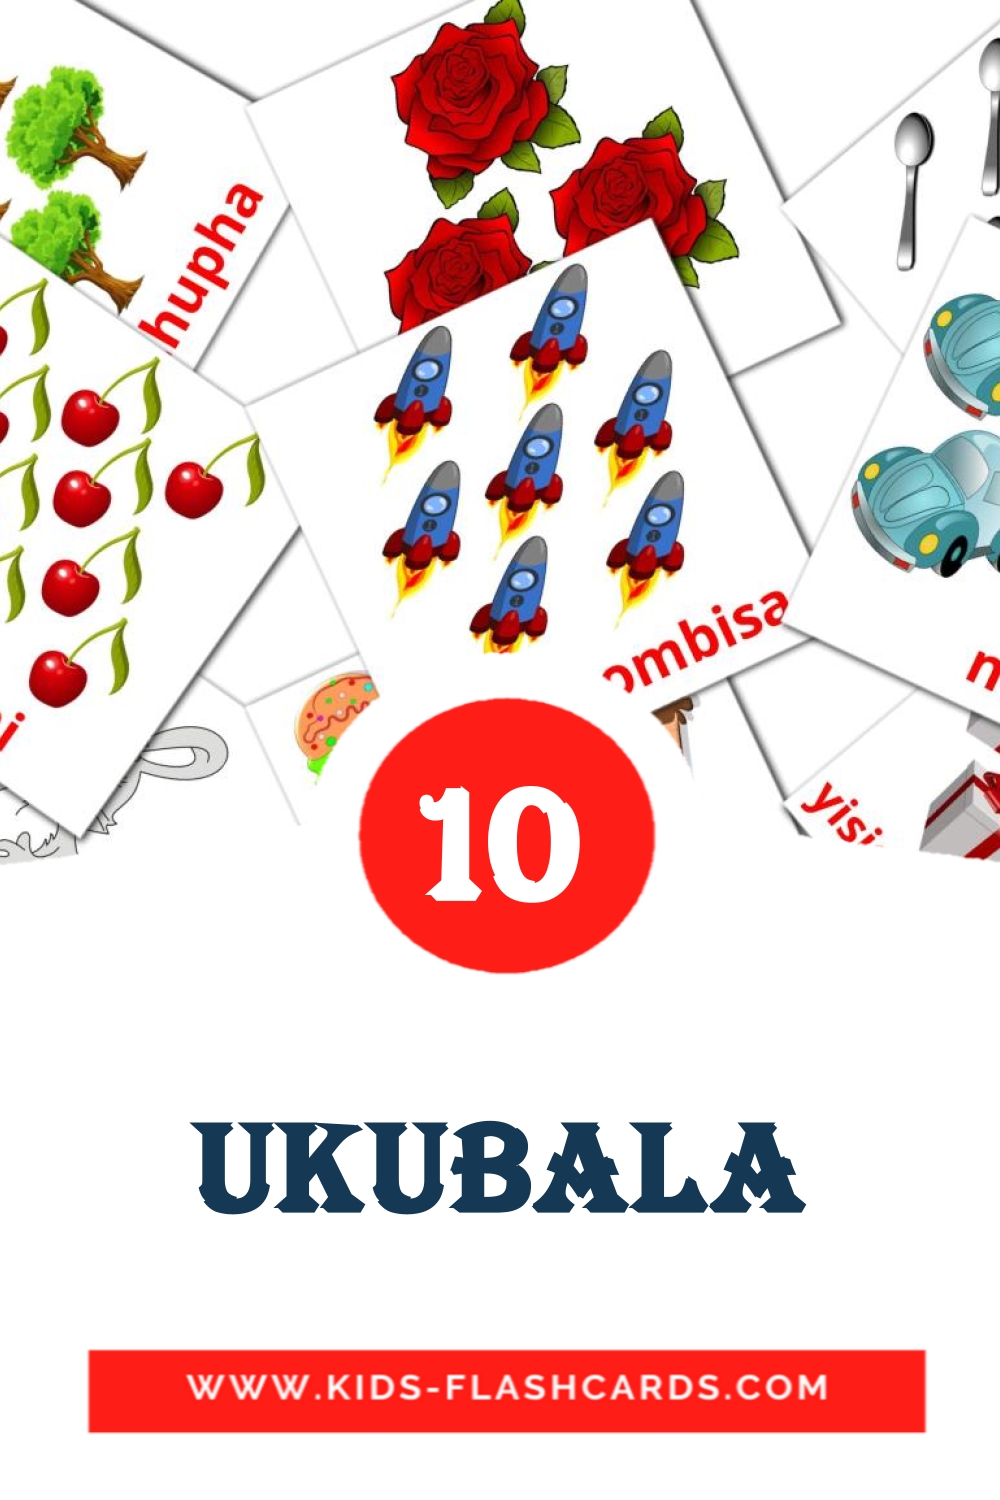 10 Ukubala fotokaarten voor kleuters in het zulu